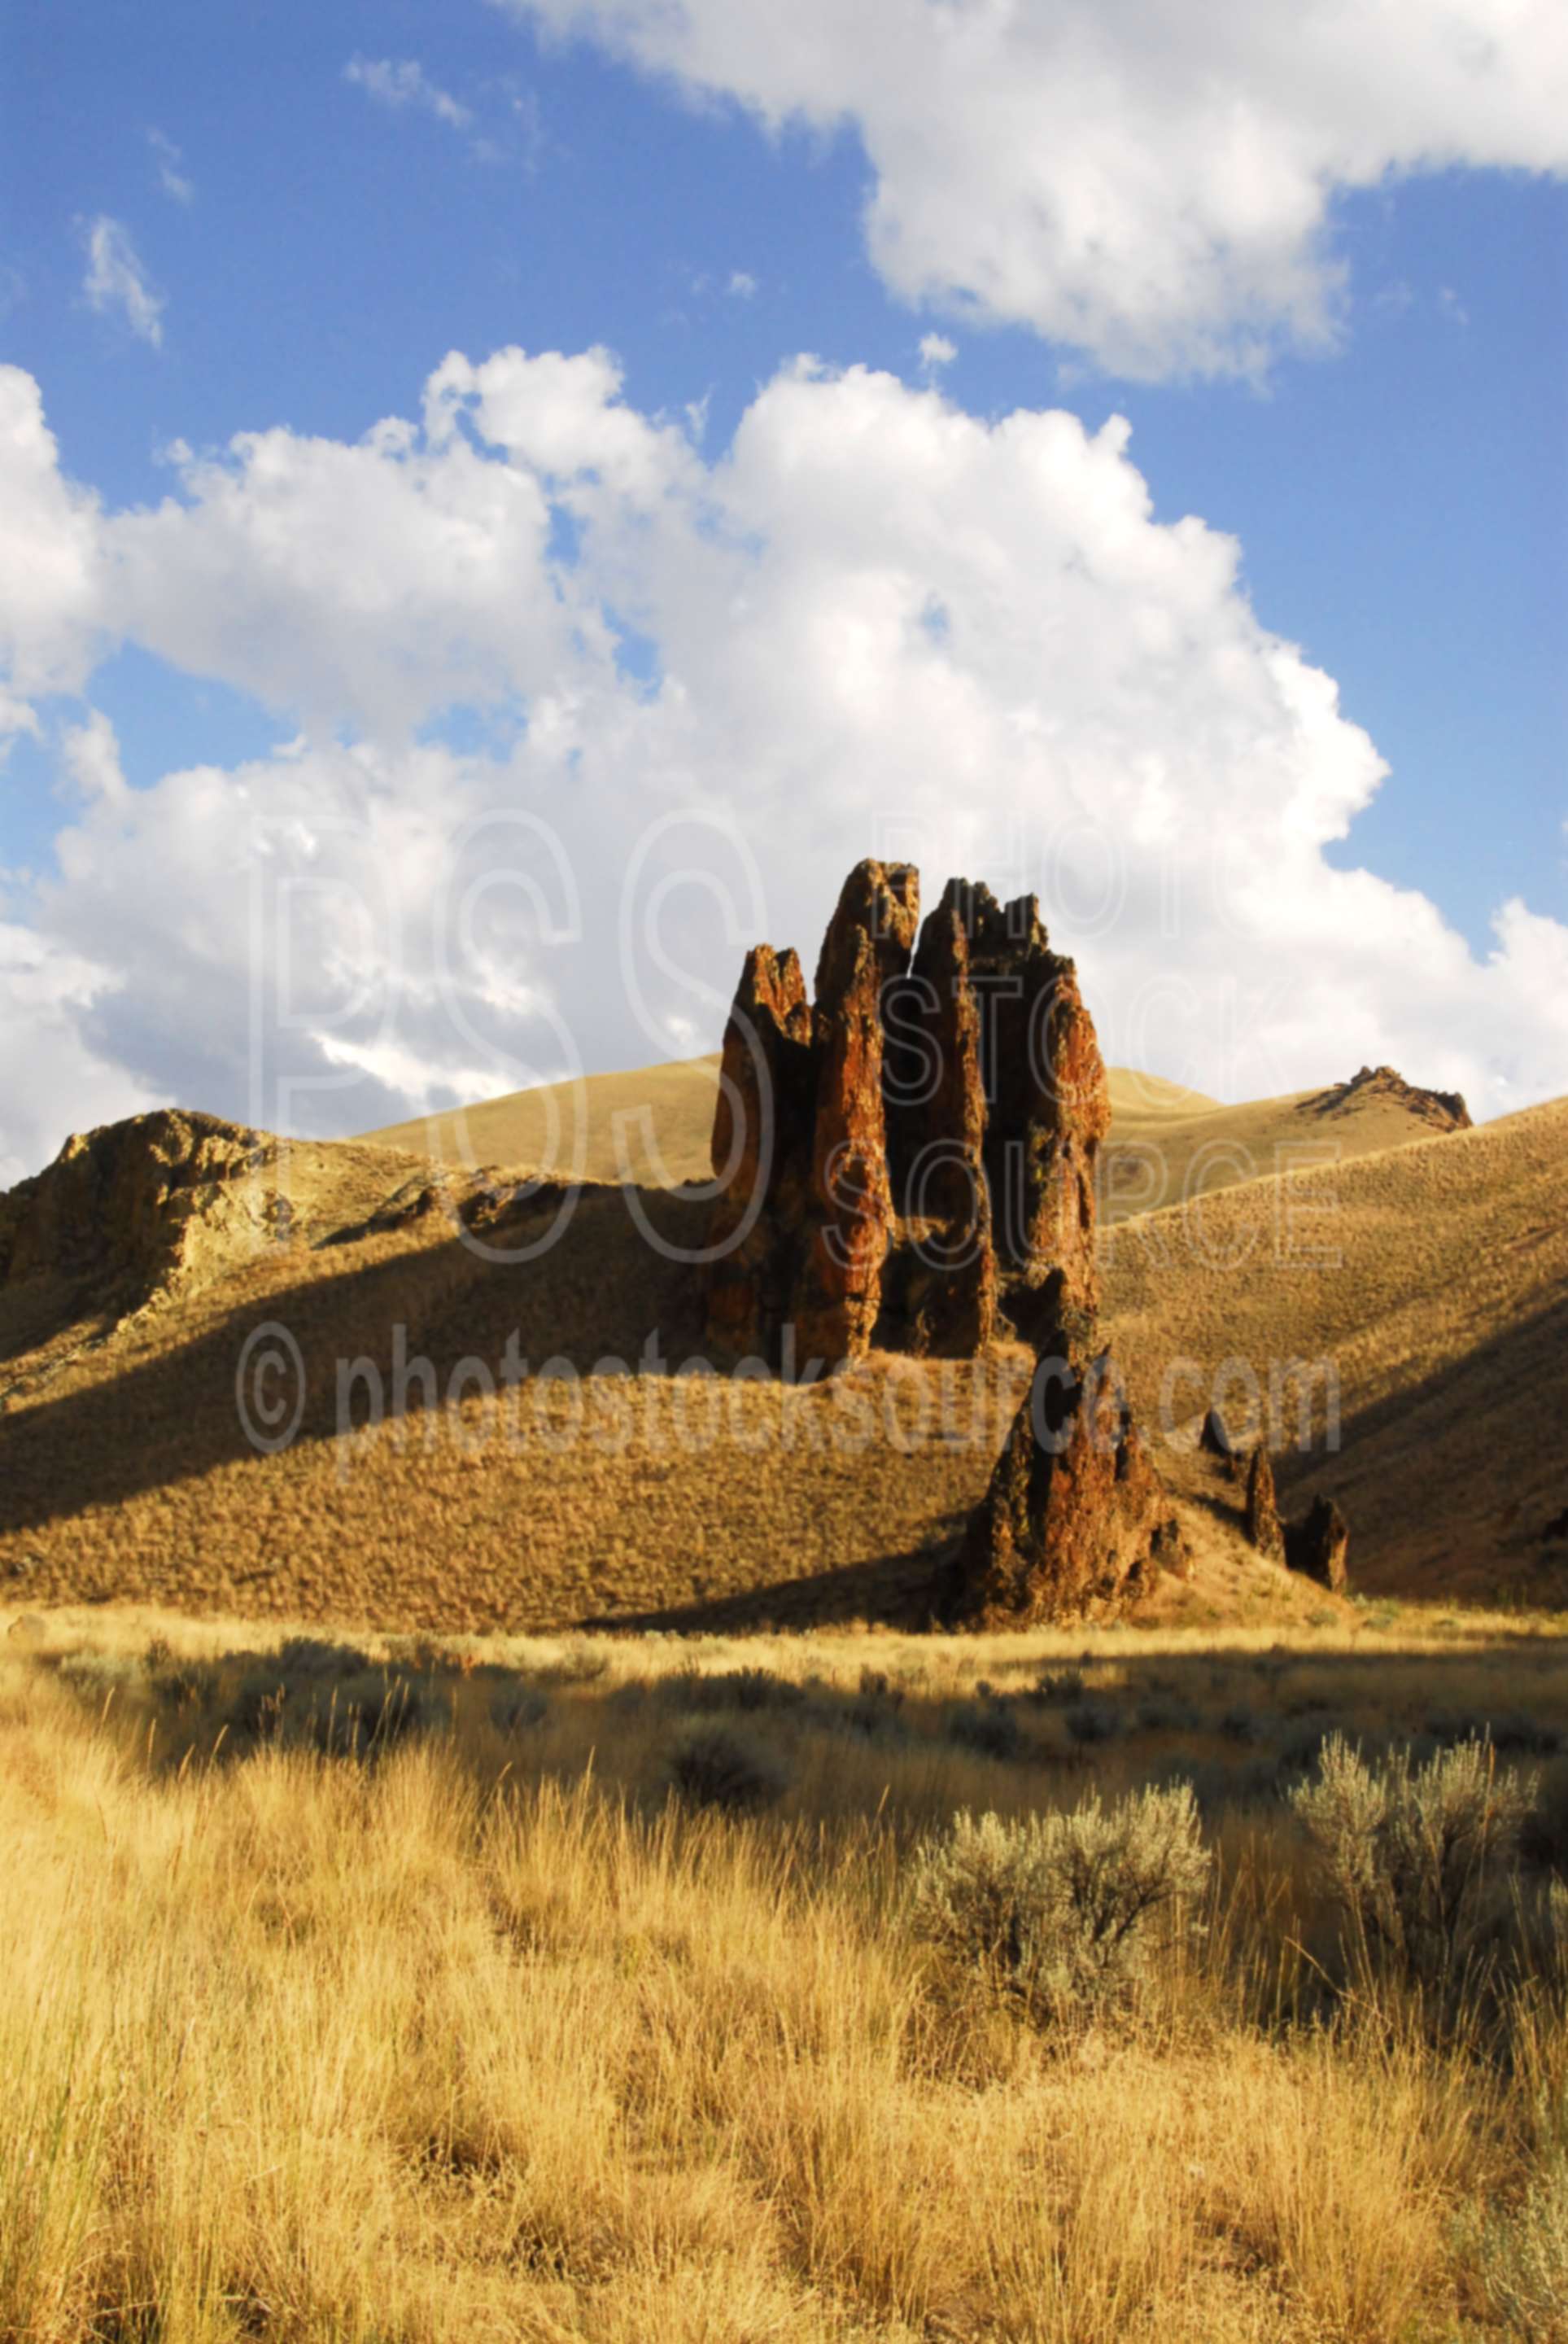 Slocum Creek Rocks,desert,gulch,valley,gorge,rocks,formations